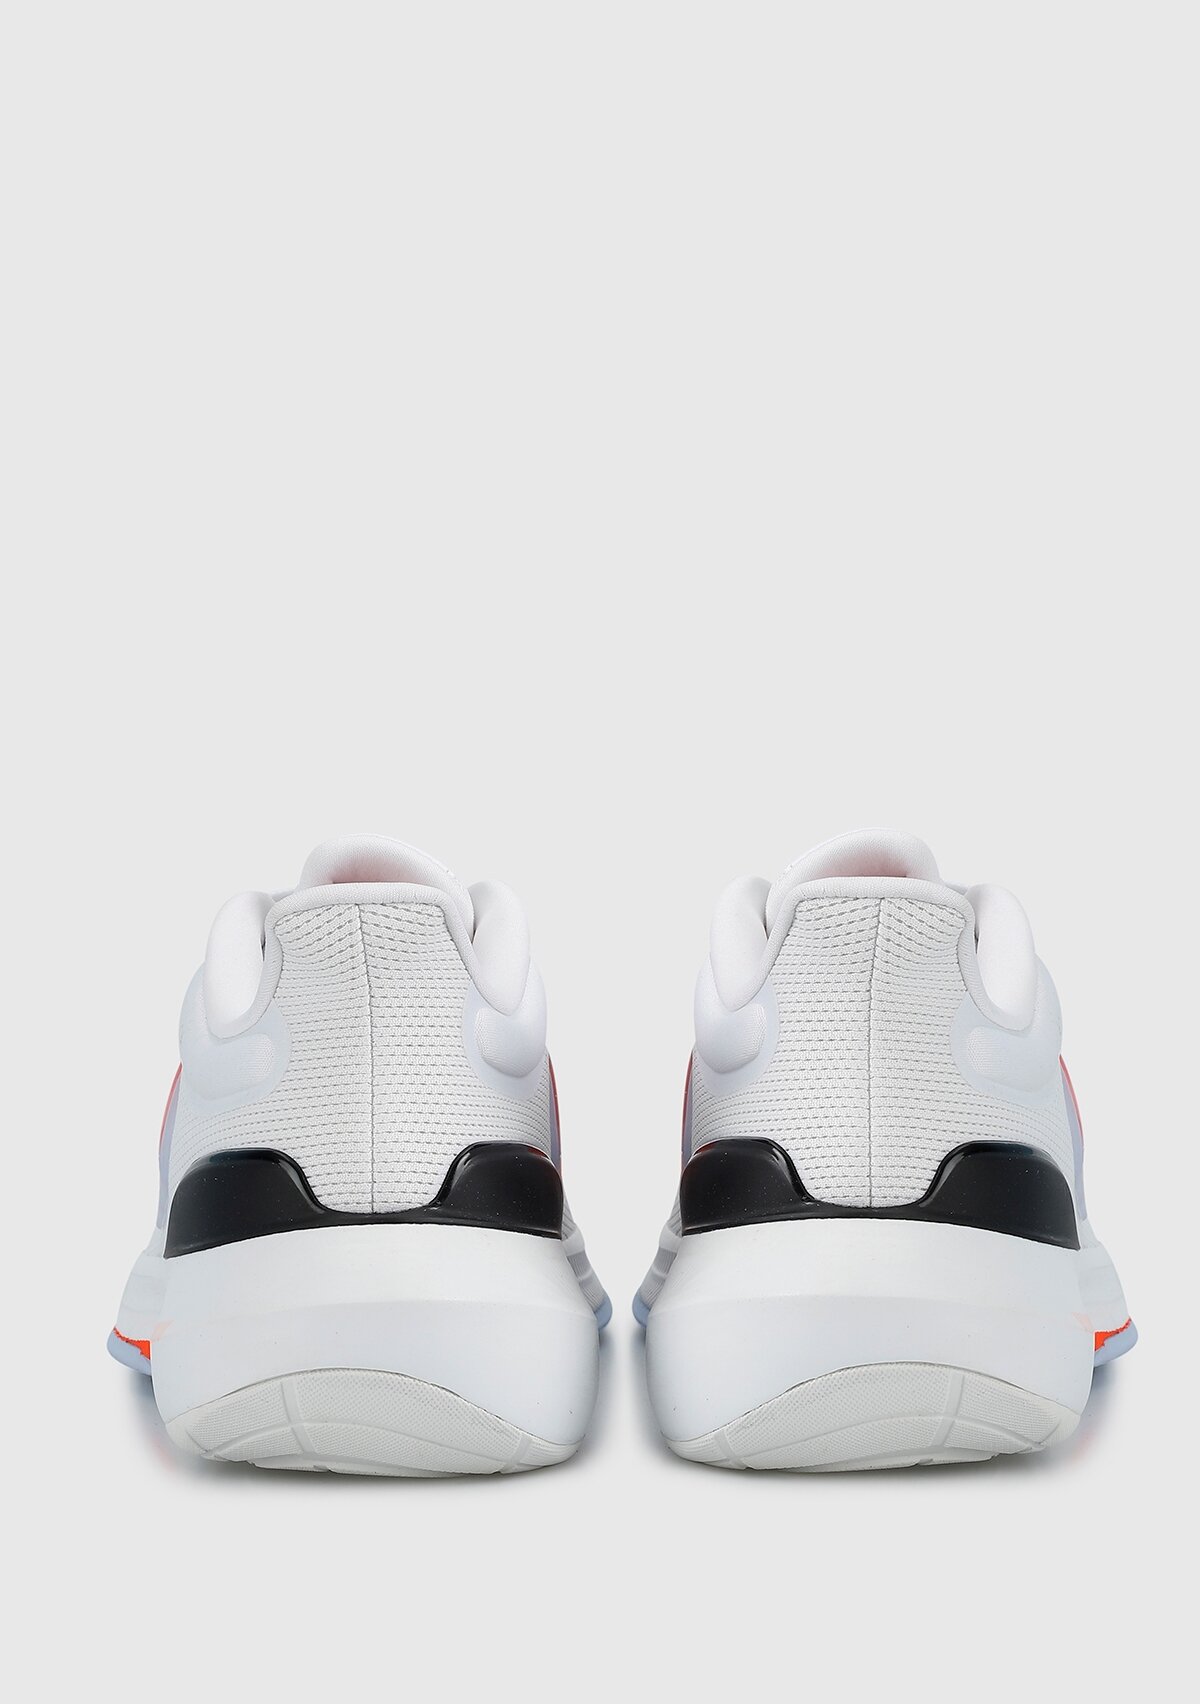 adidas Ultrabounce Beyaz Erkek Koşu Ayakkabısı HP5771 